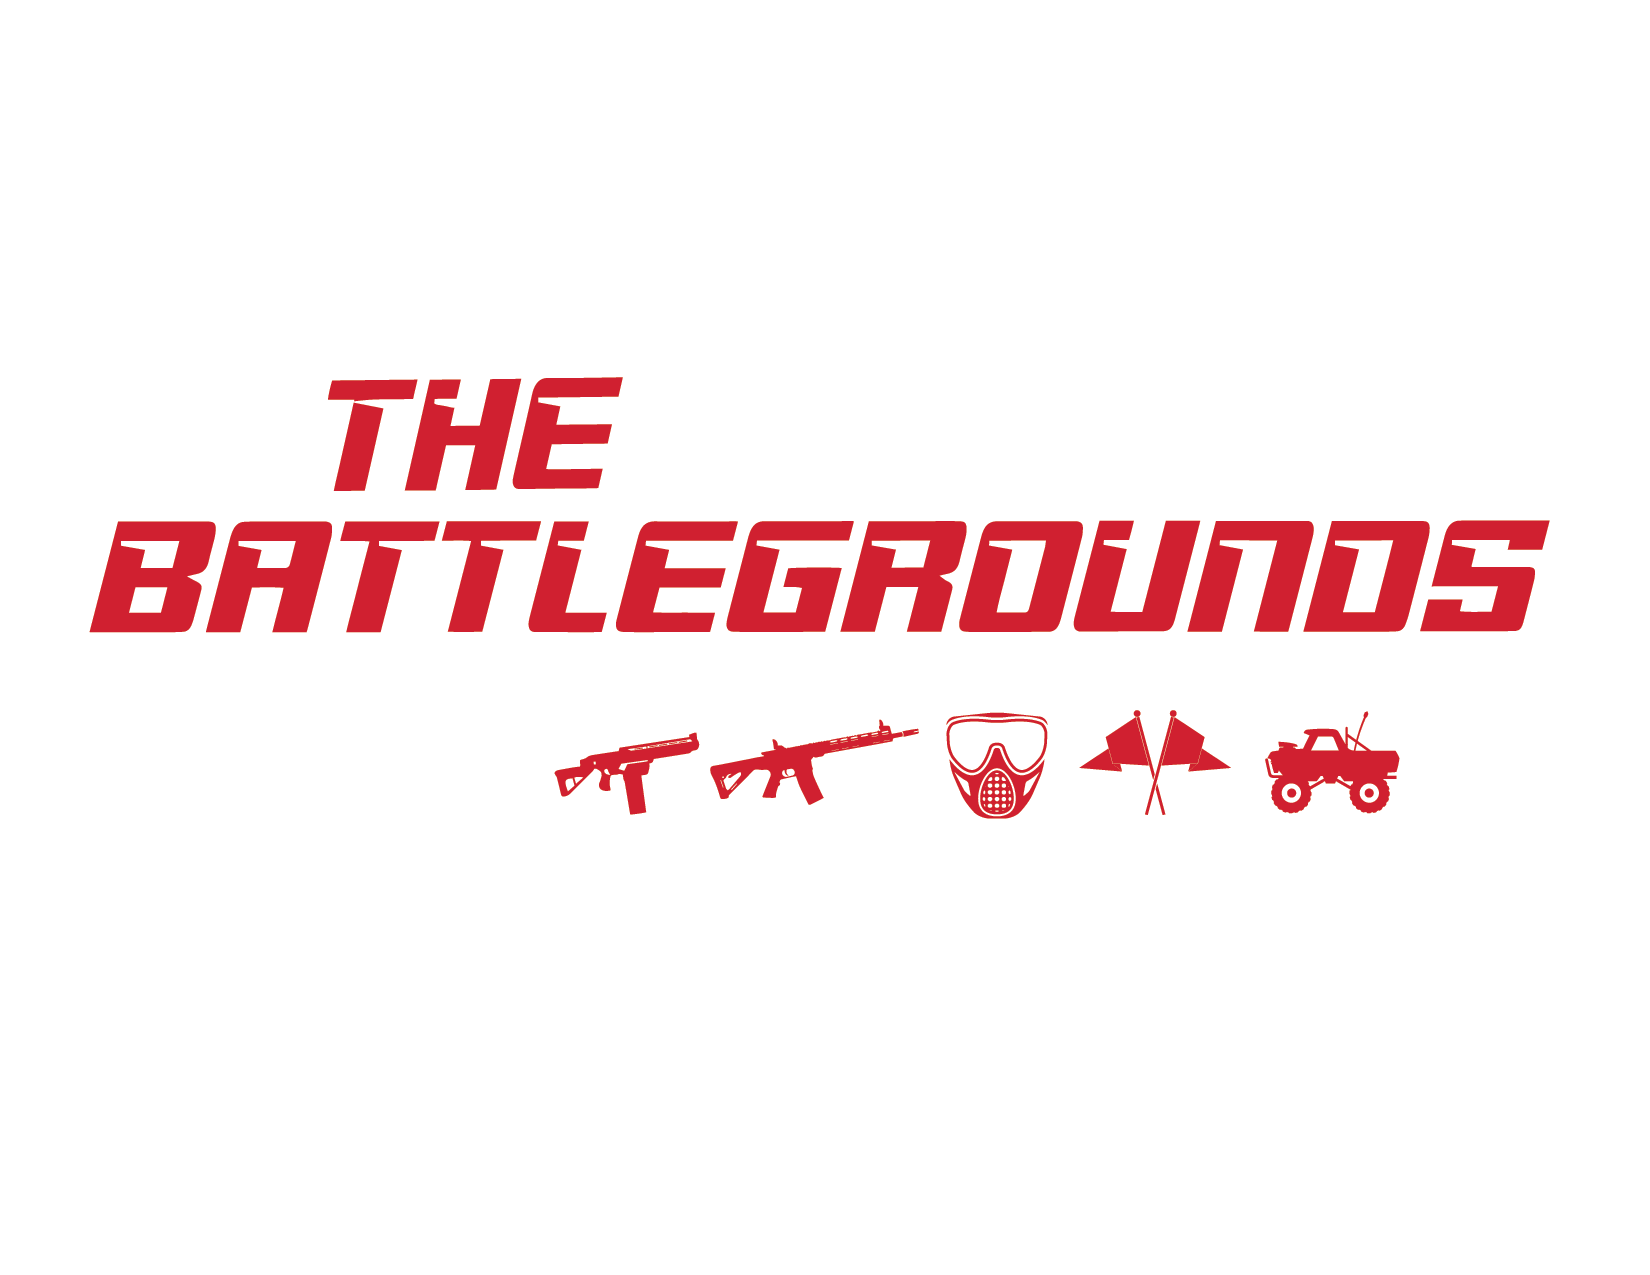 The Battlegrounds